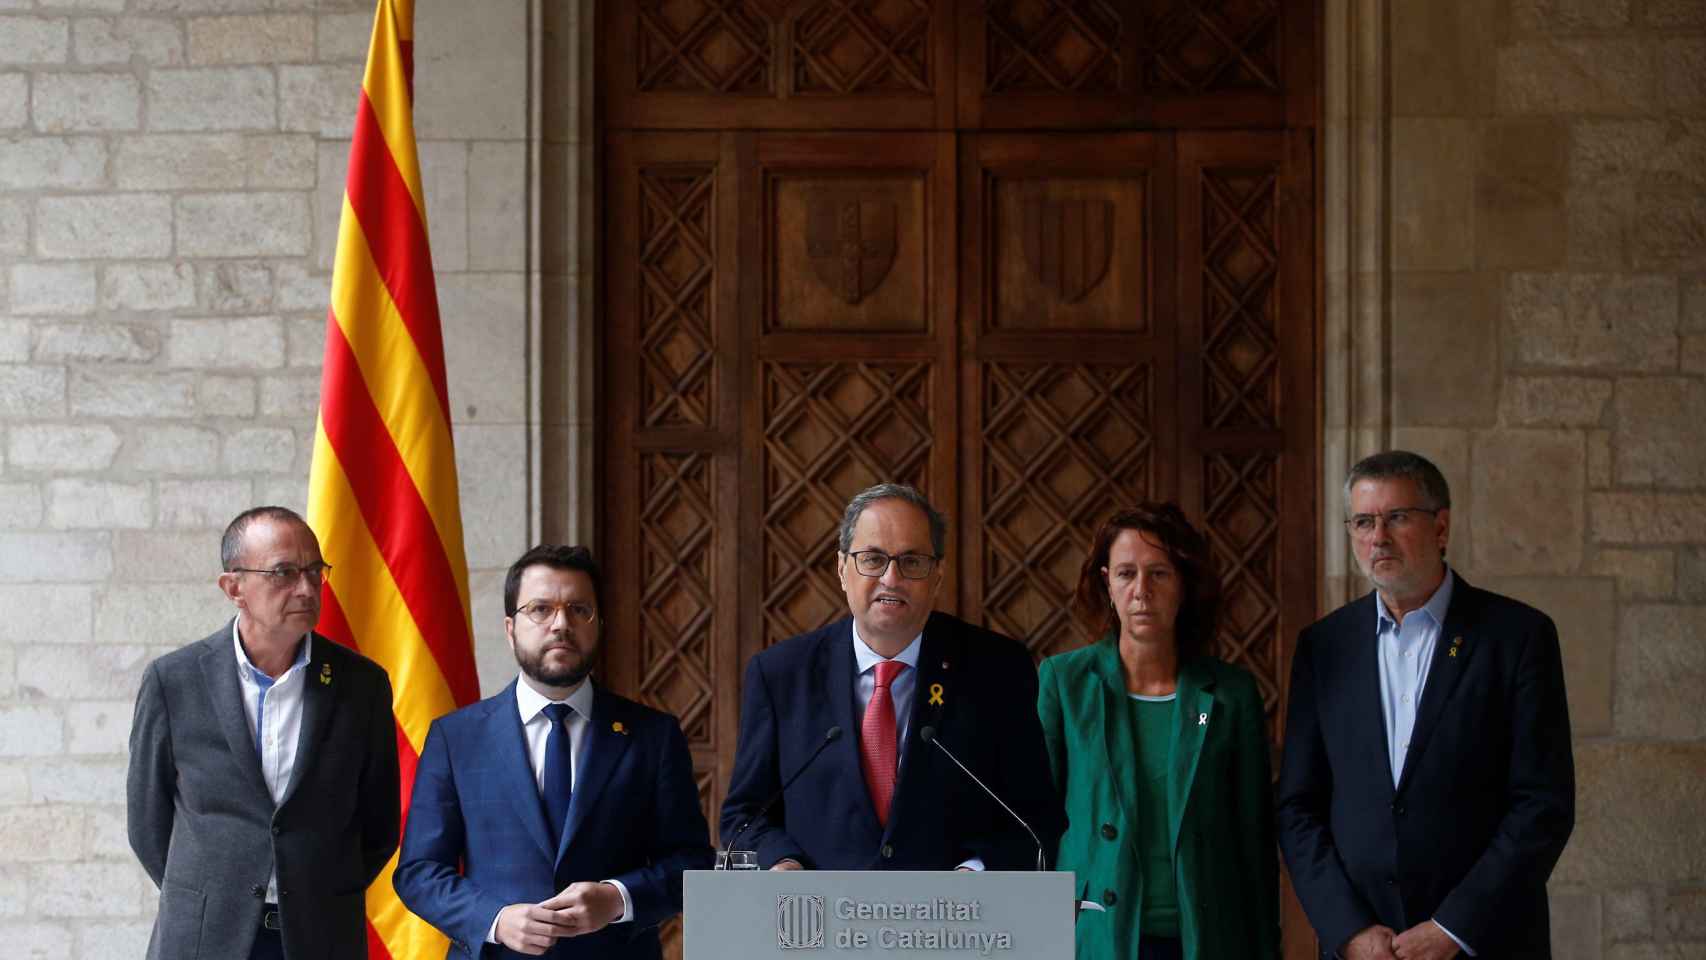 El presidente de la Generalitat, Quim Torra, junto a su vicepresidente, Pere Aragonés, y los alcaldes de Lleida, Girona y Tarragona. Independentistas / EFE